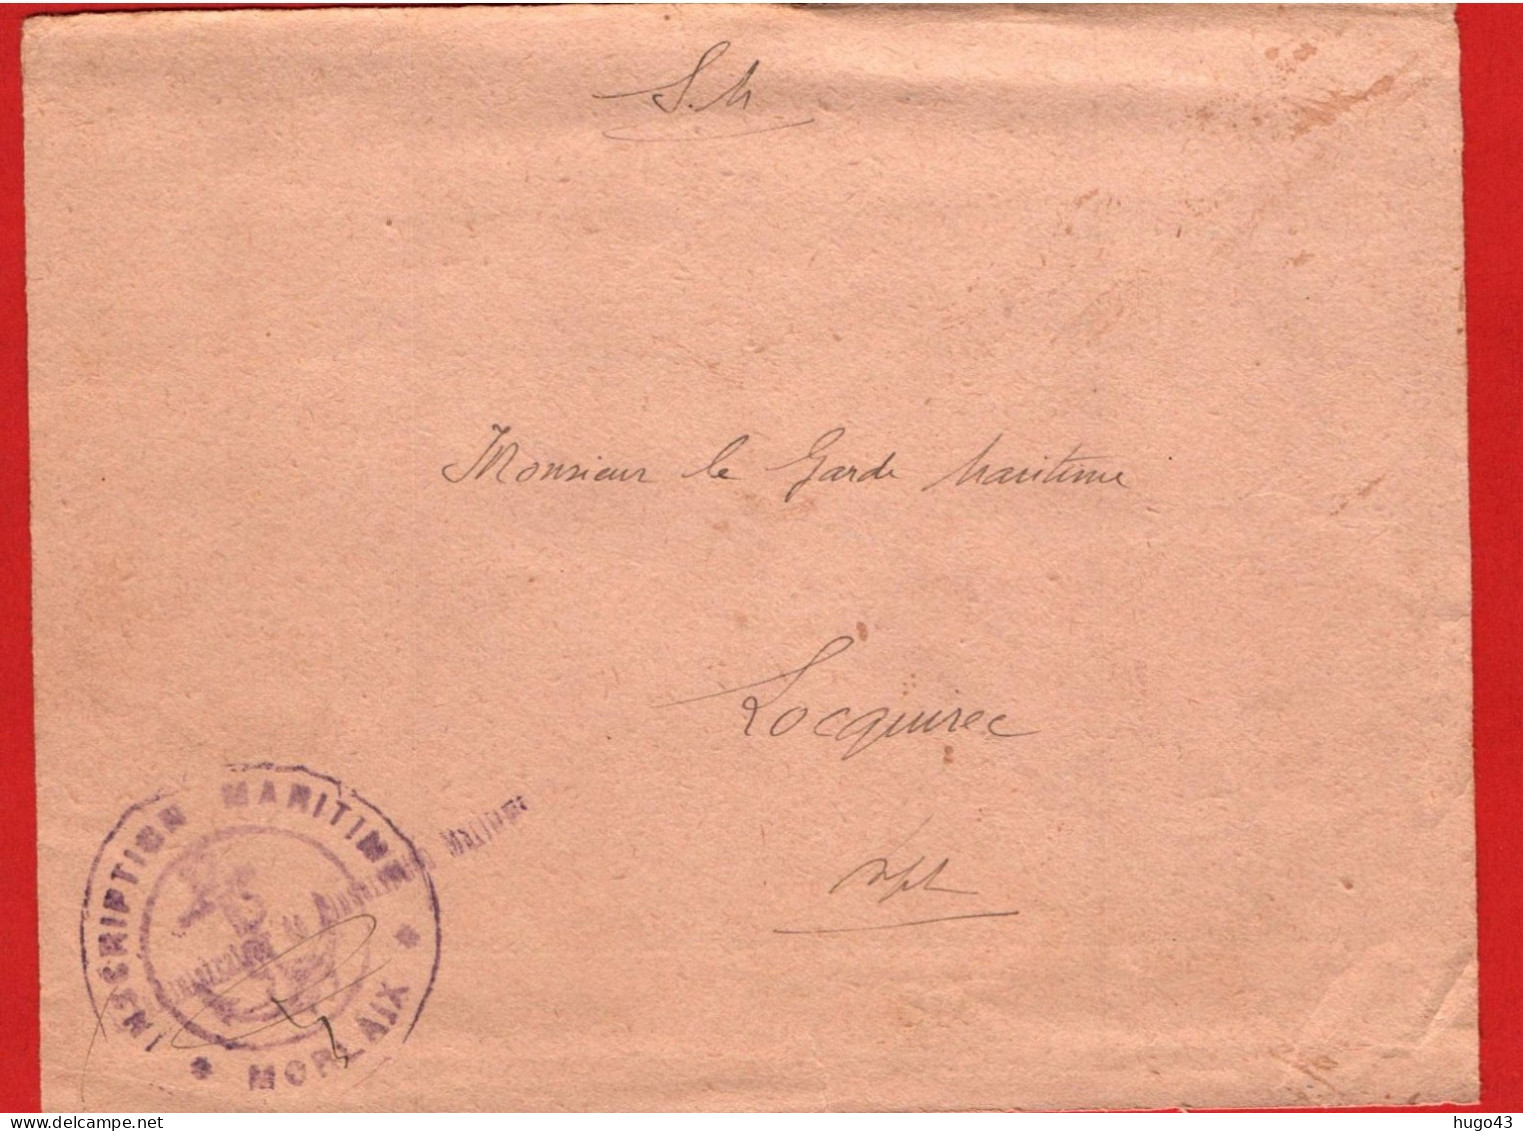 (RECTO / VERSO) DEVANT D' ENVELOPPE DE LA MAIRIE DU PRE SAINT SERVAIS EN 1939 - CACHET INSCRIPTION MARITIME AU DOS - Storia Postale